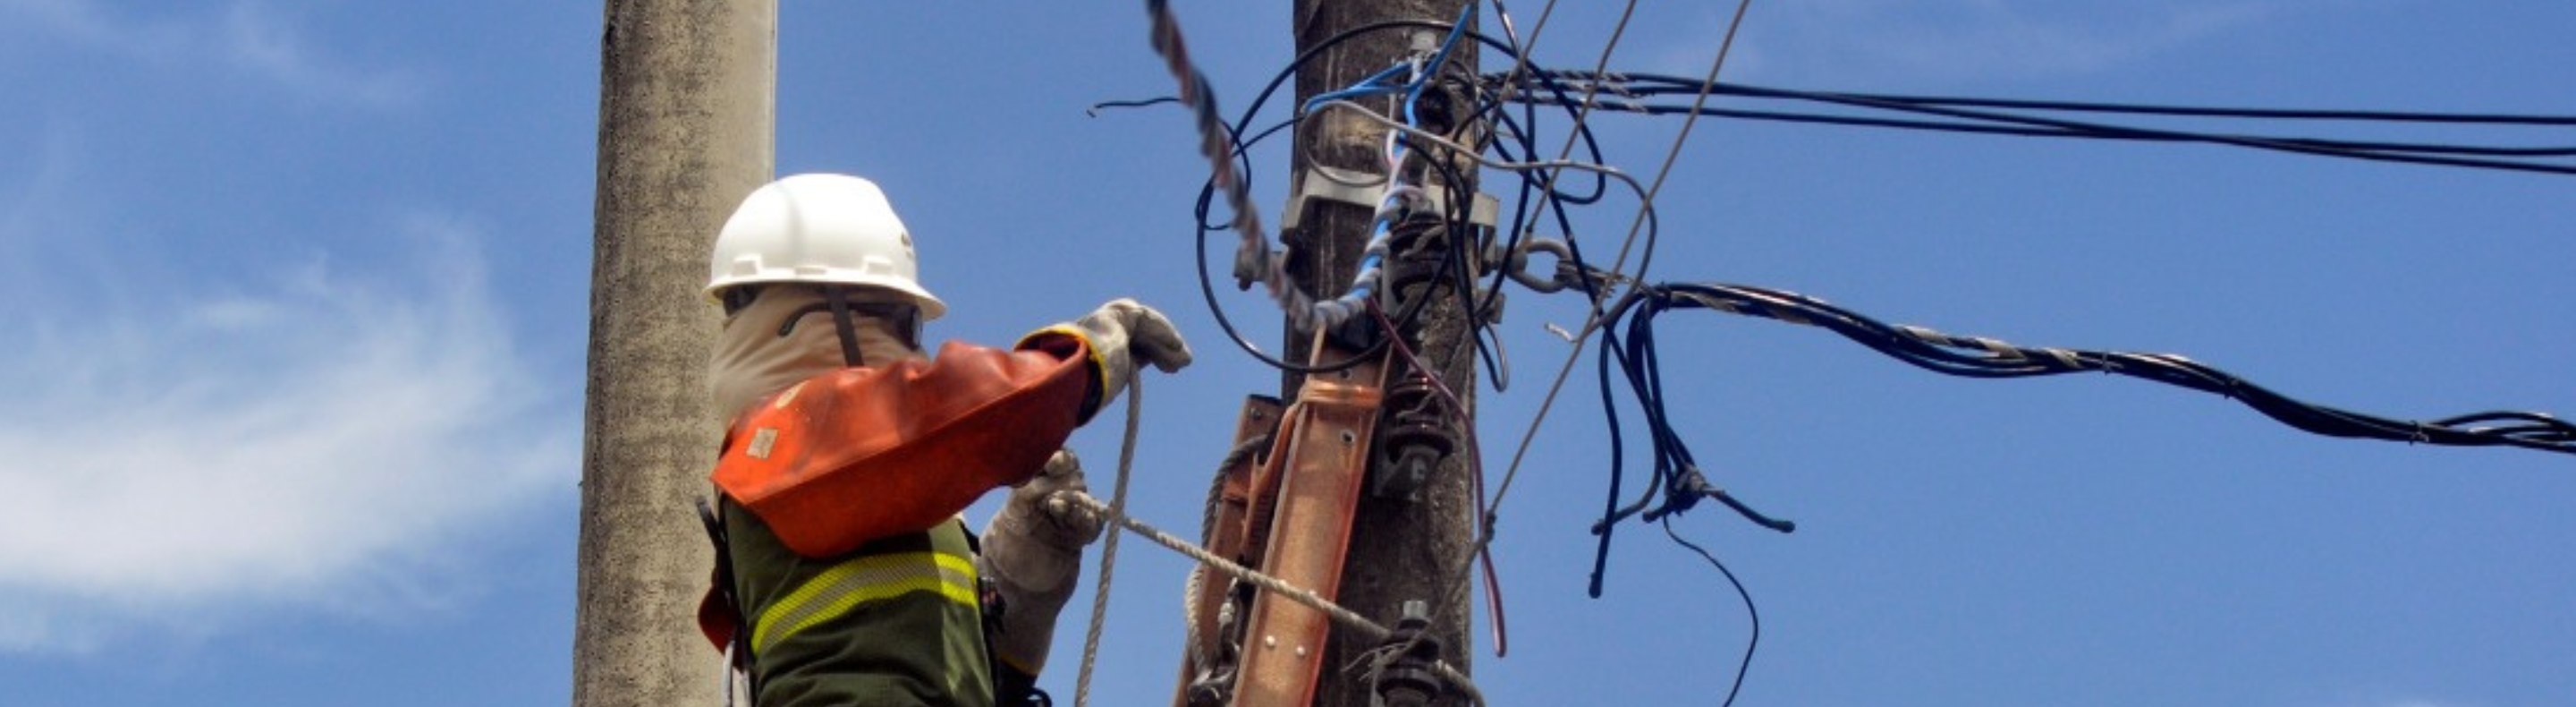 Imagem mostra eletricista da Neoenergia Cosern realizando manutenção na rede elétrica 